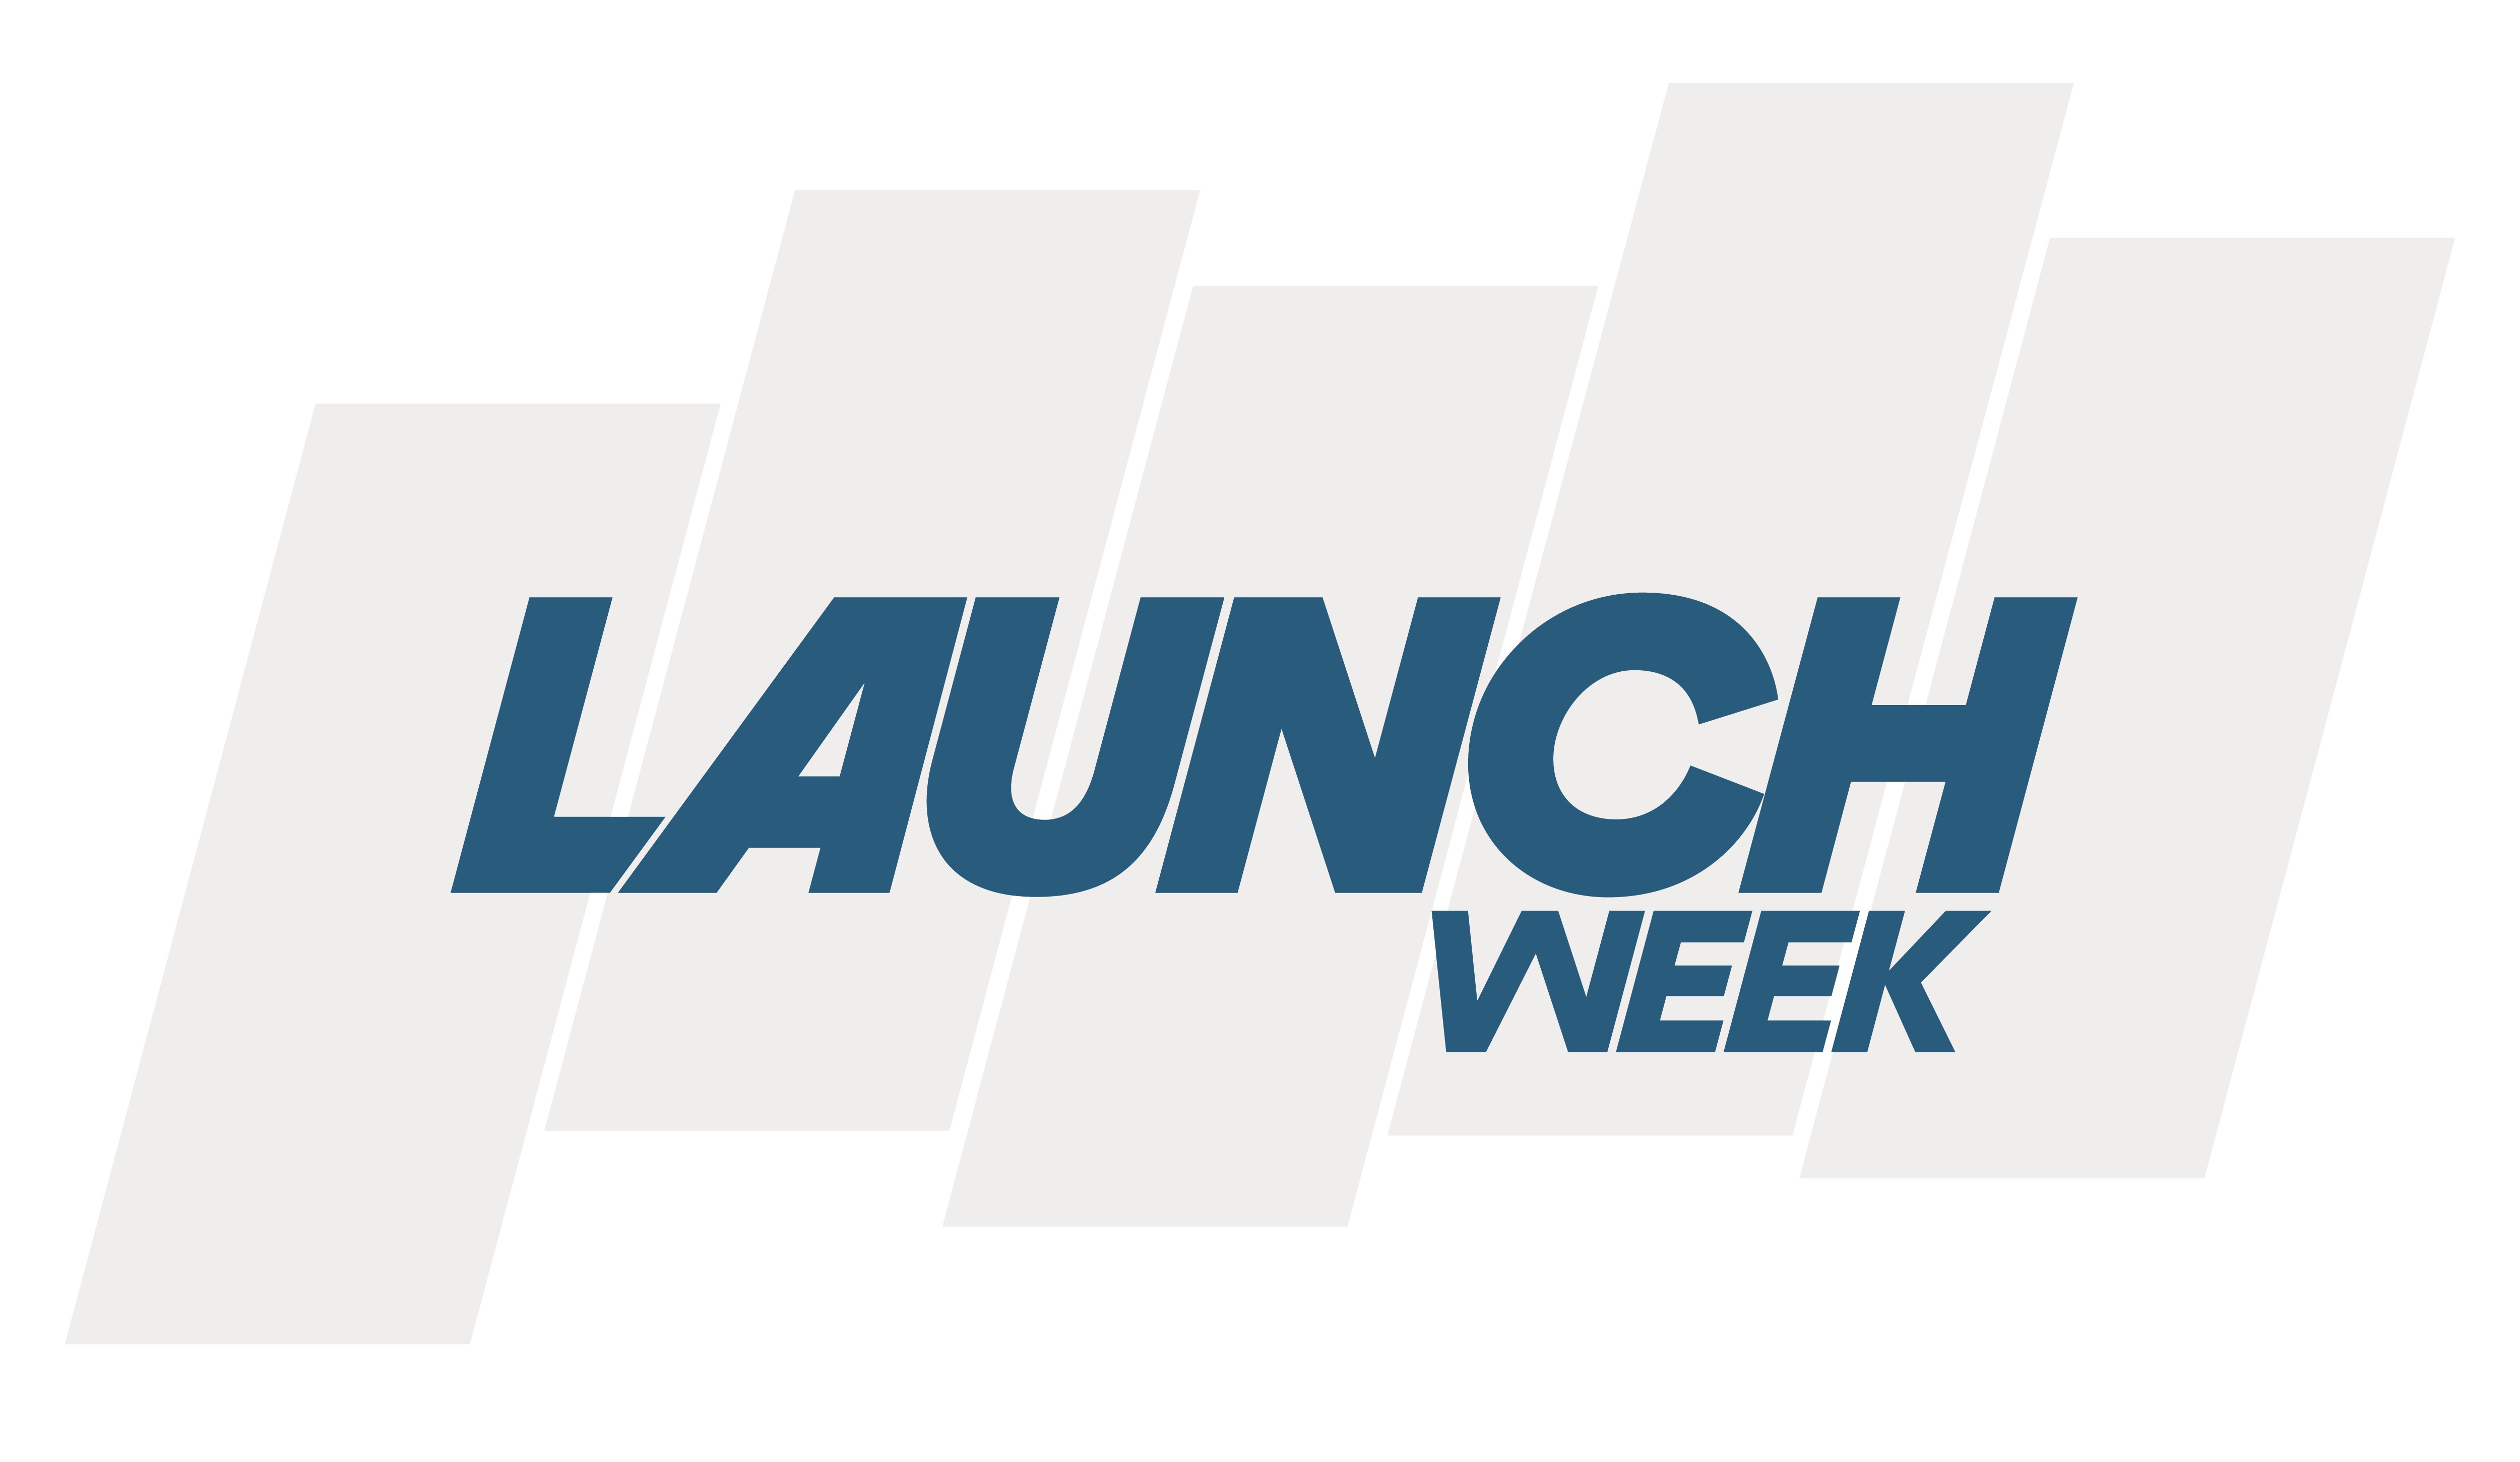 It’s Launch Week!